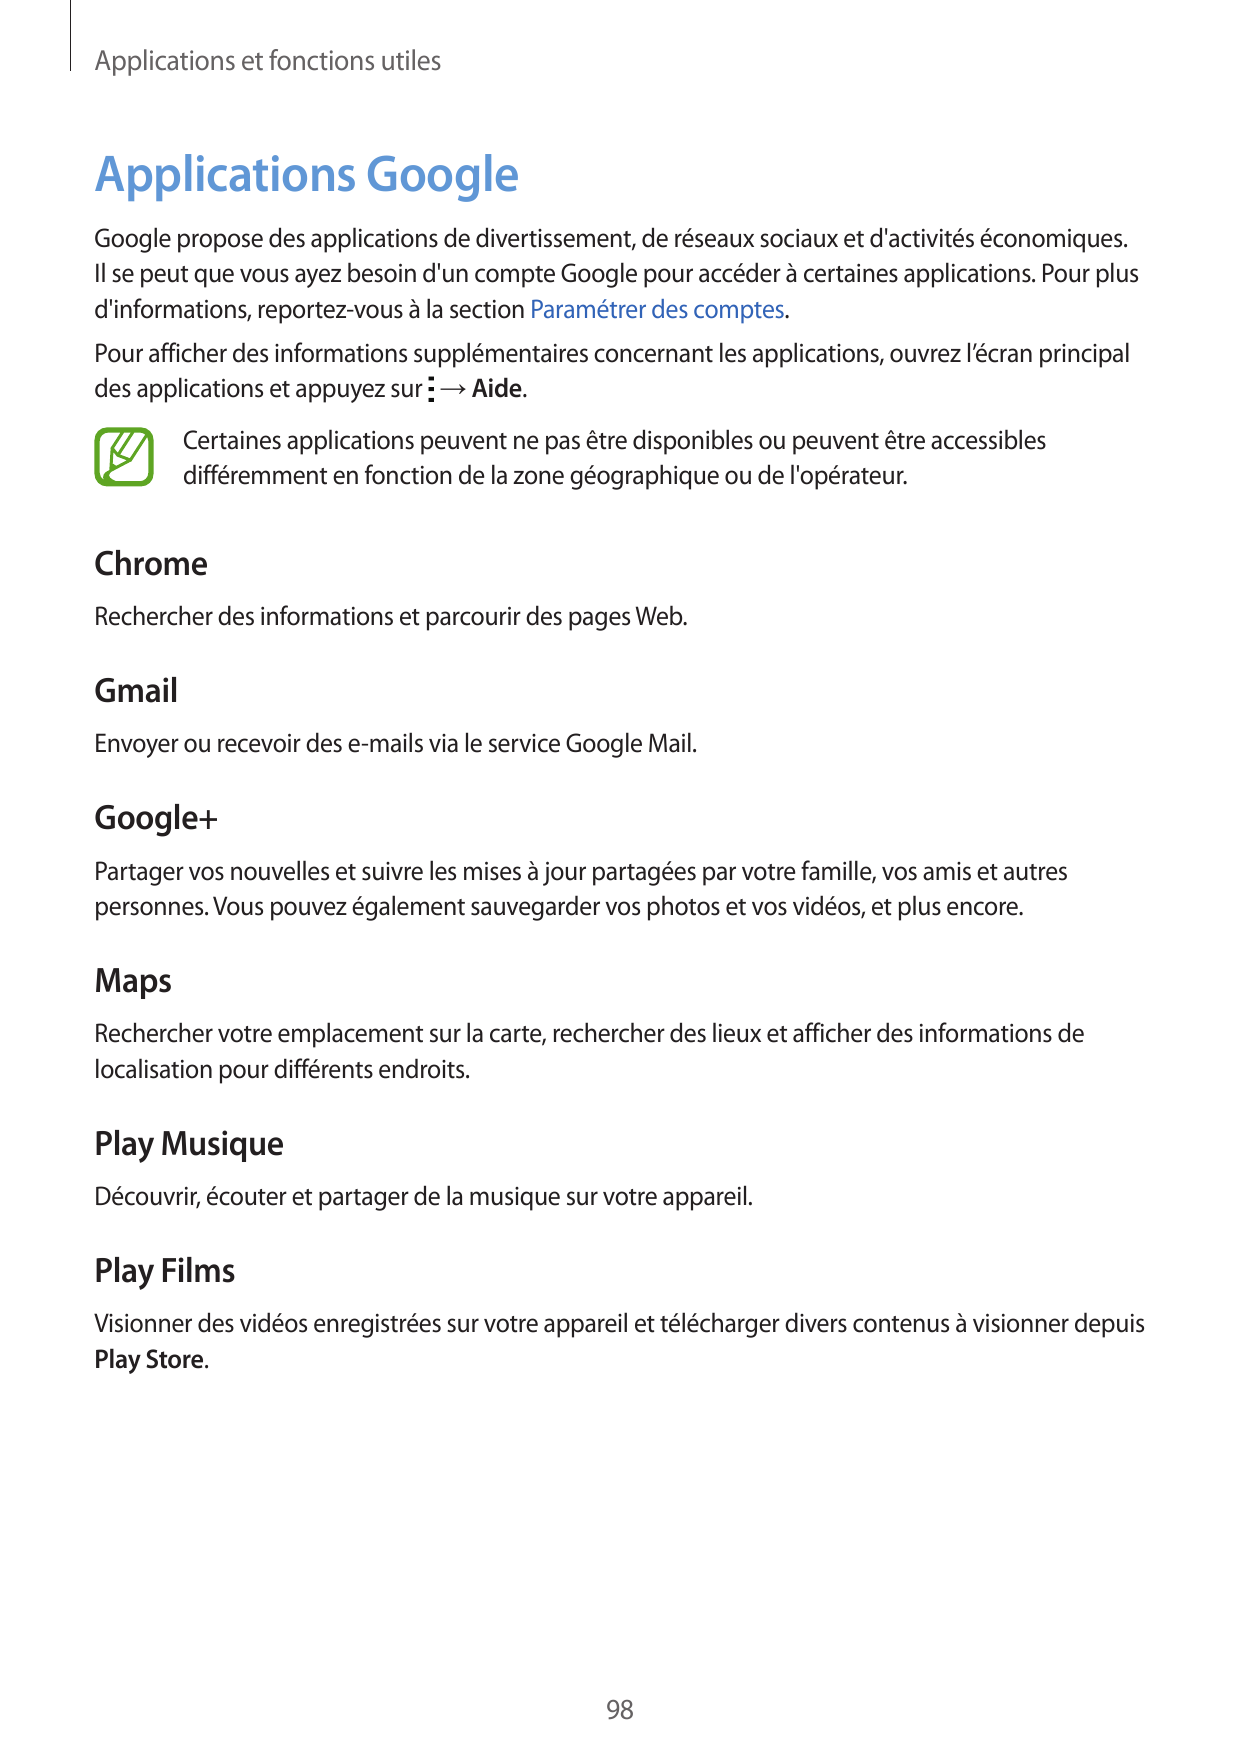 Applications et fonctions utilesApplications GoogleGoogle propose des applications de divertissement, de réseaux sociaux et d'ac